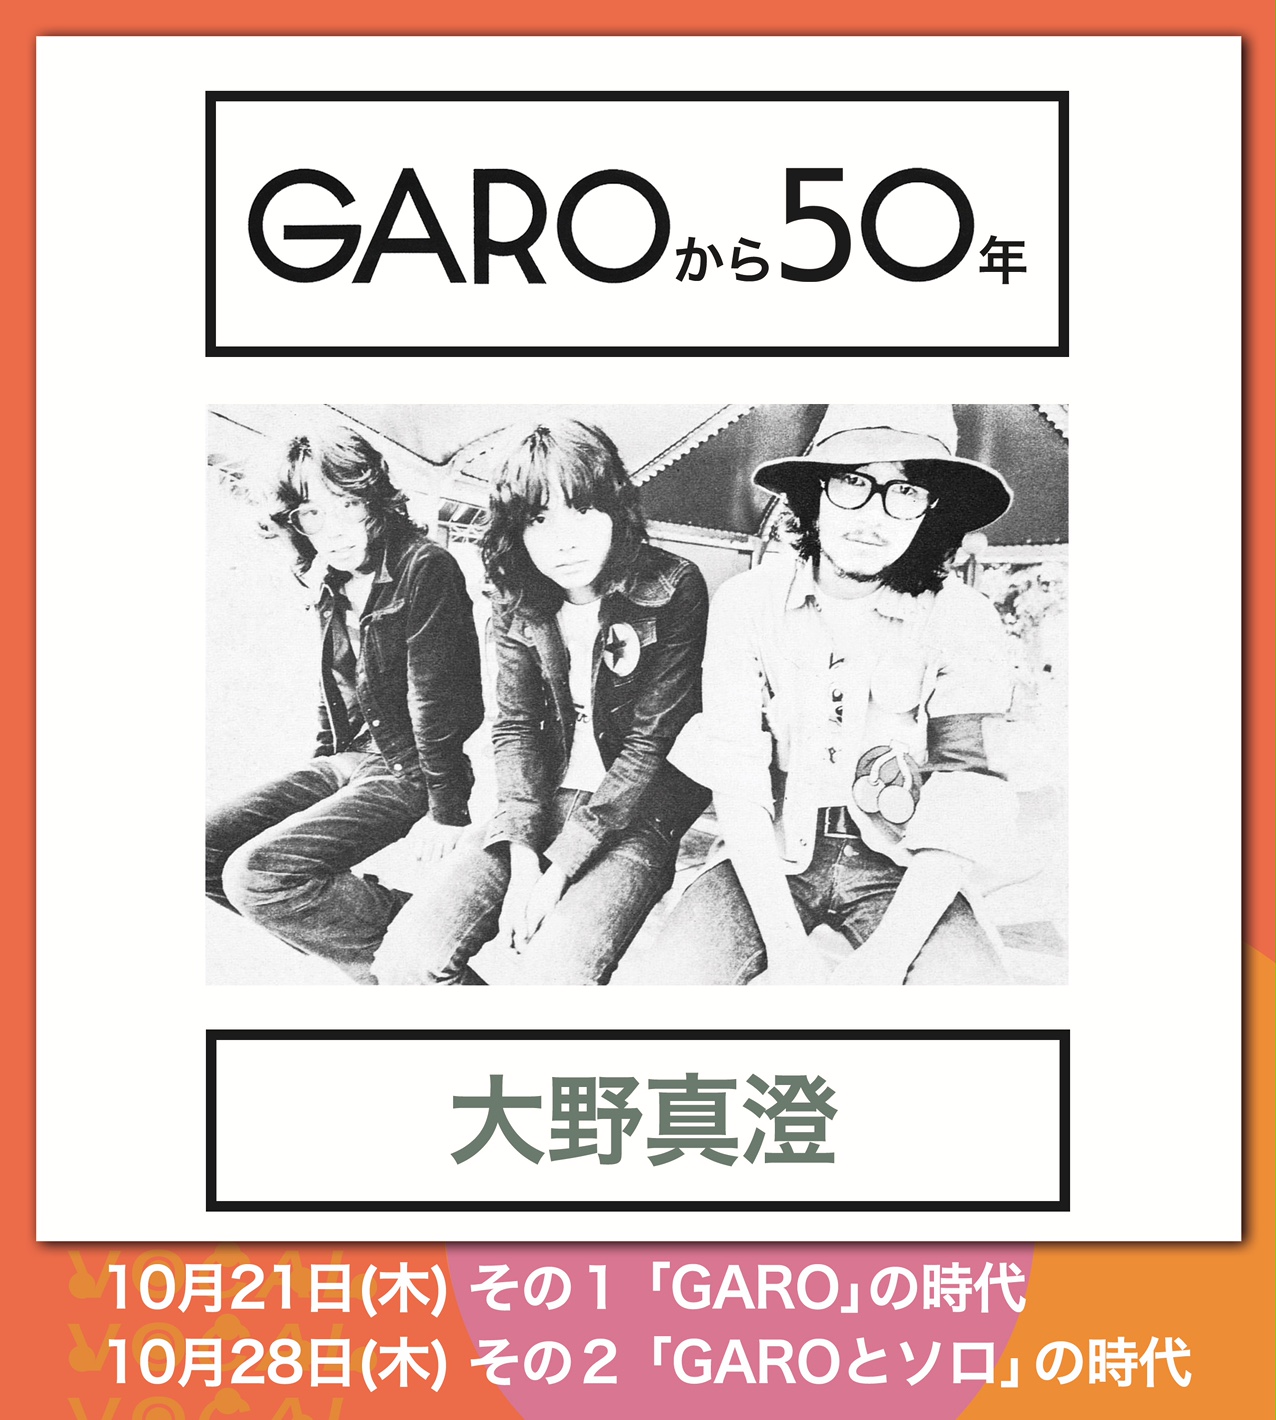 大野真澄 GAROから50年〜その1 「GARO」の時代